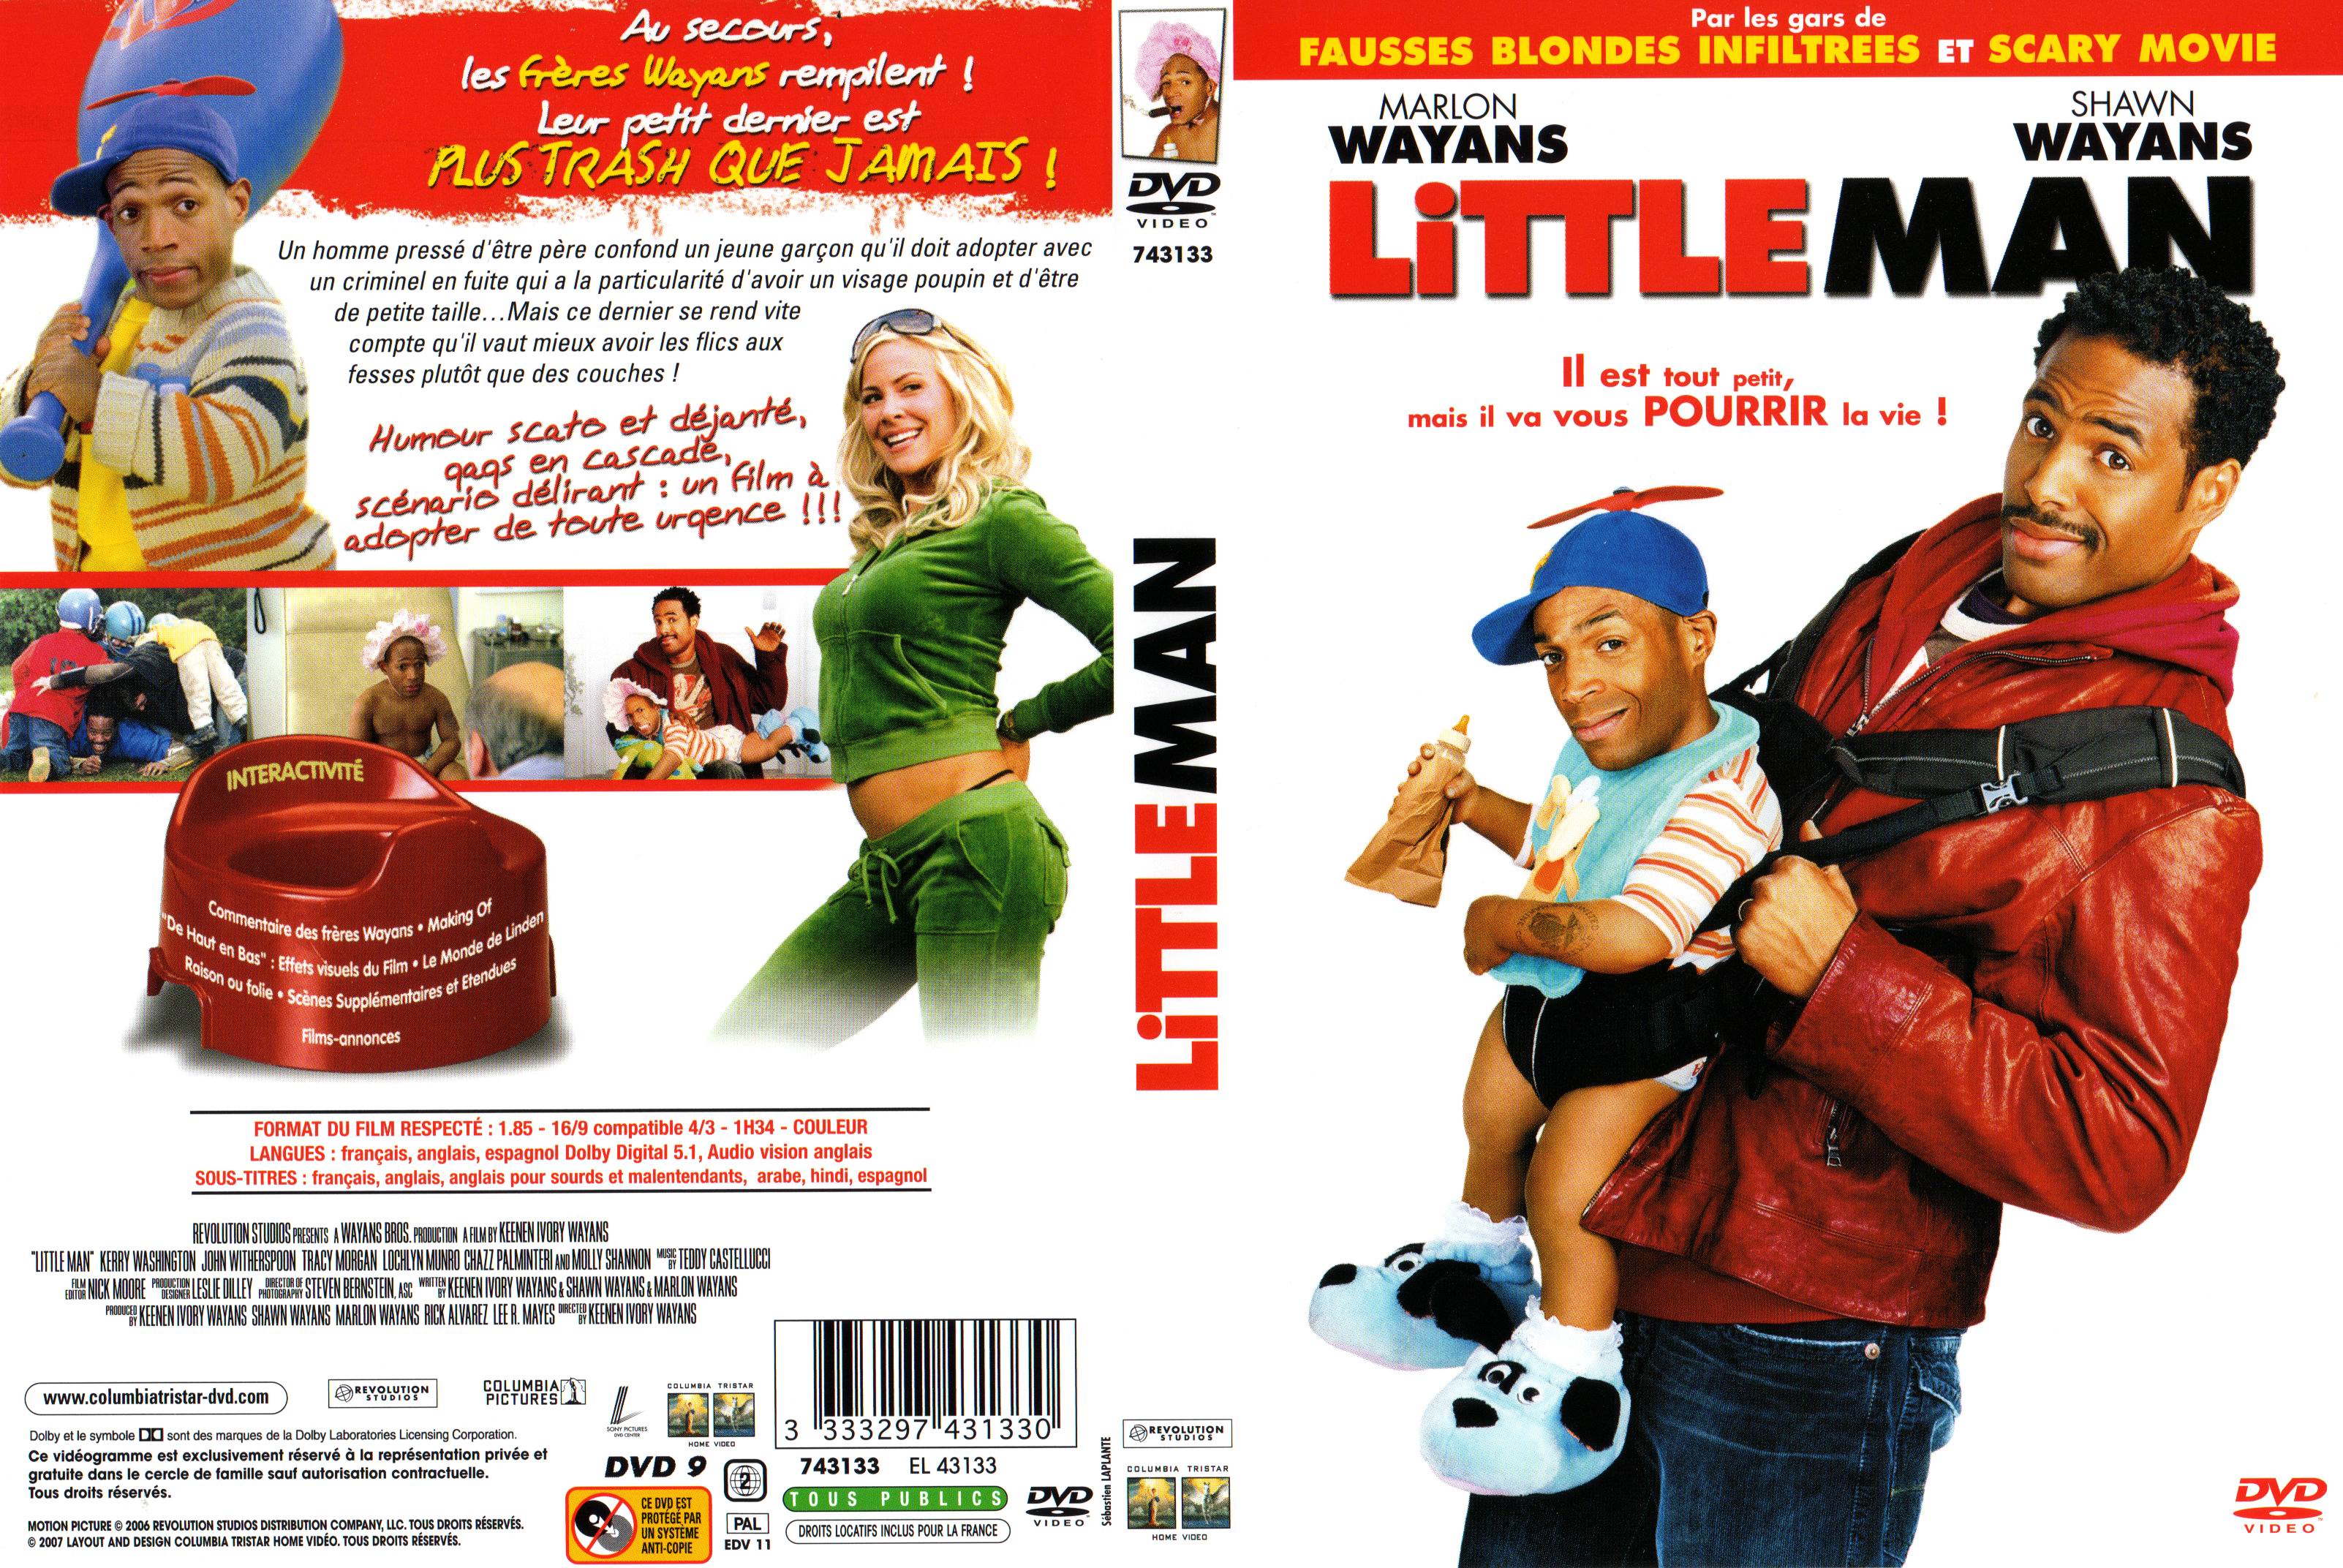 Jaquette DVD Little Man v2